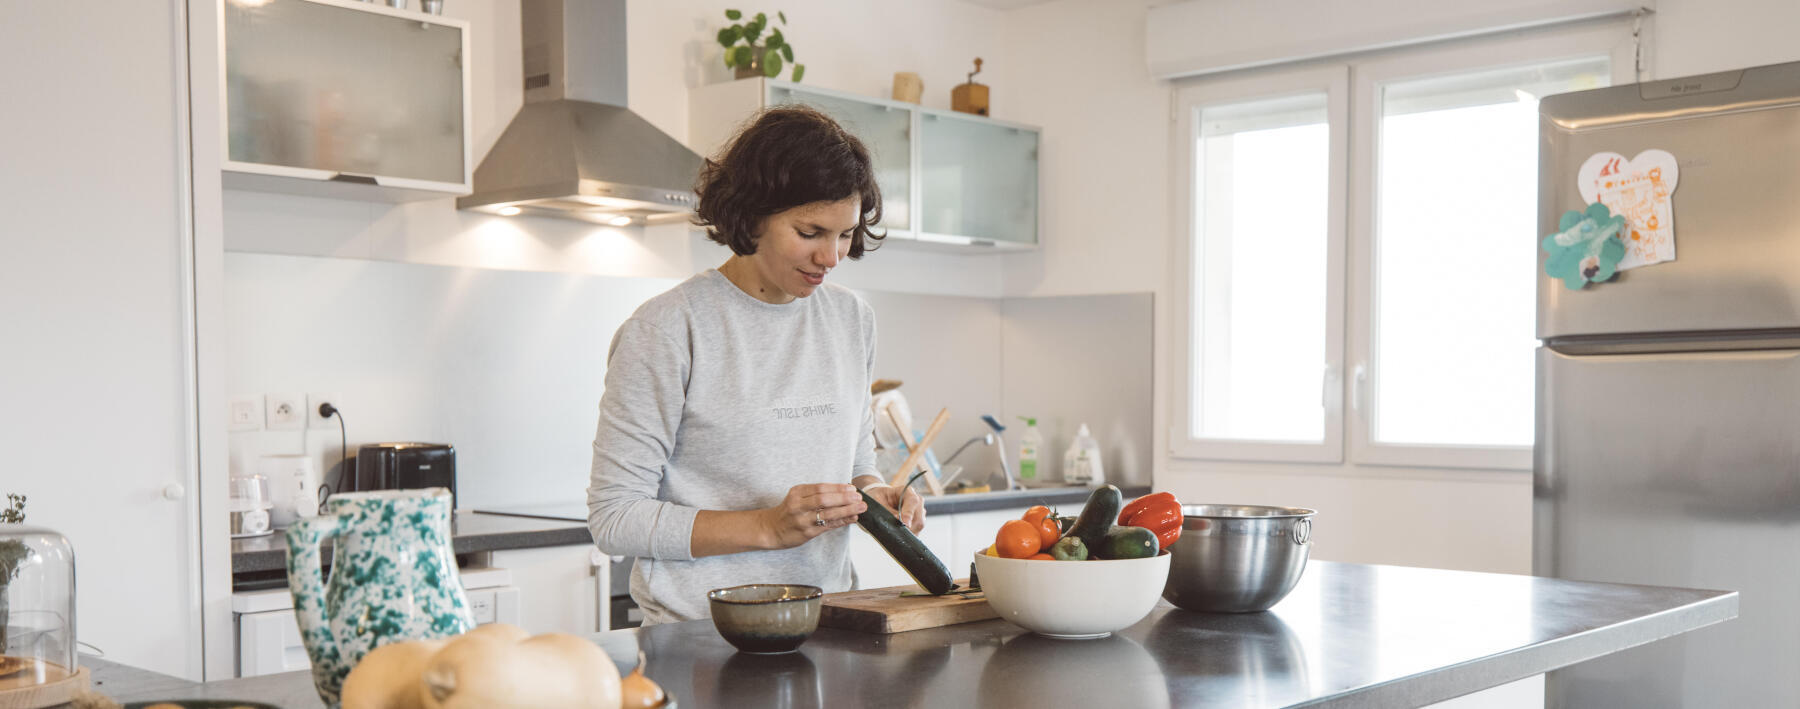 En kvinna står i sitt kök och skalar en gurka